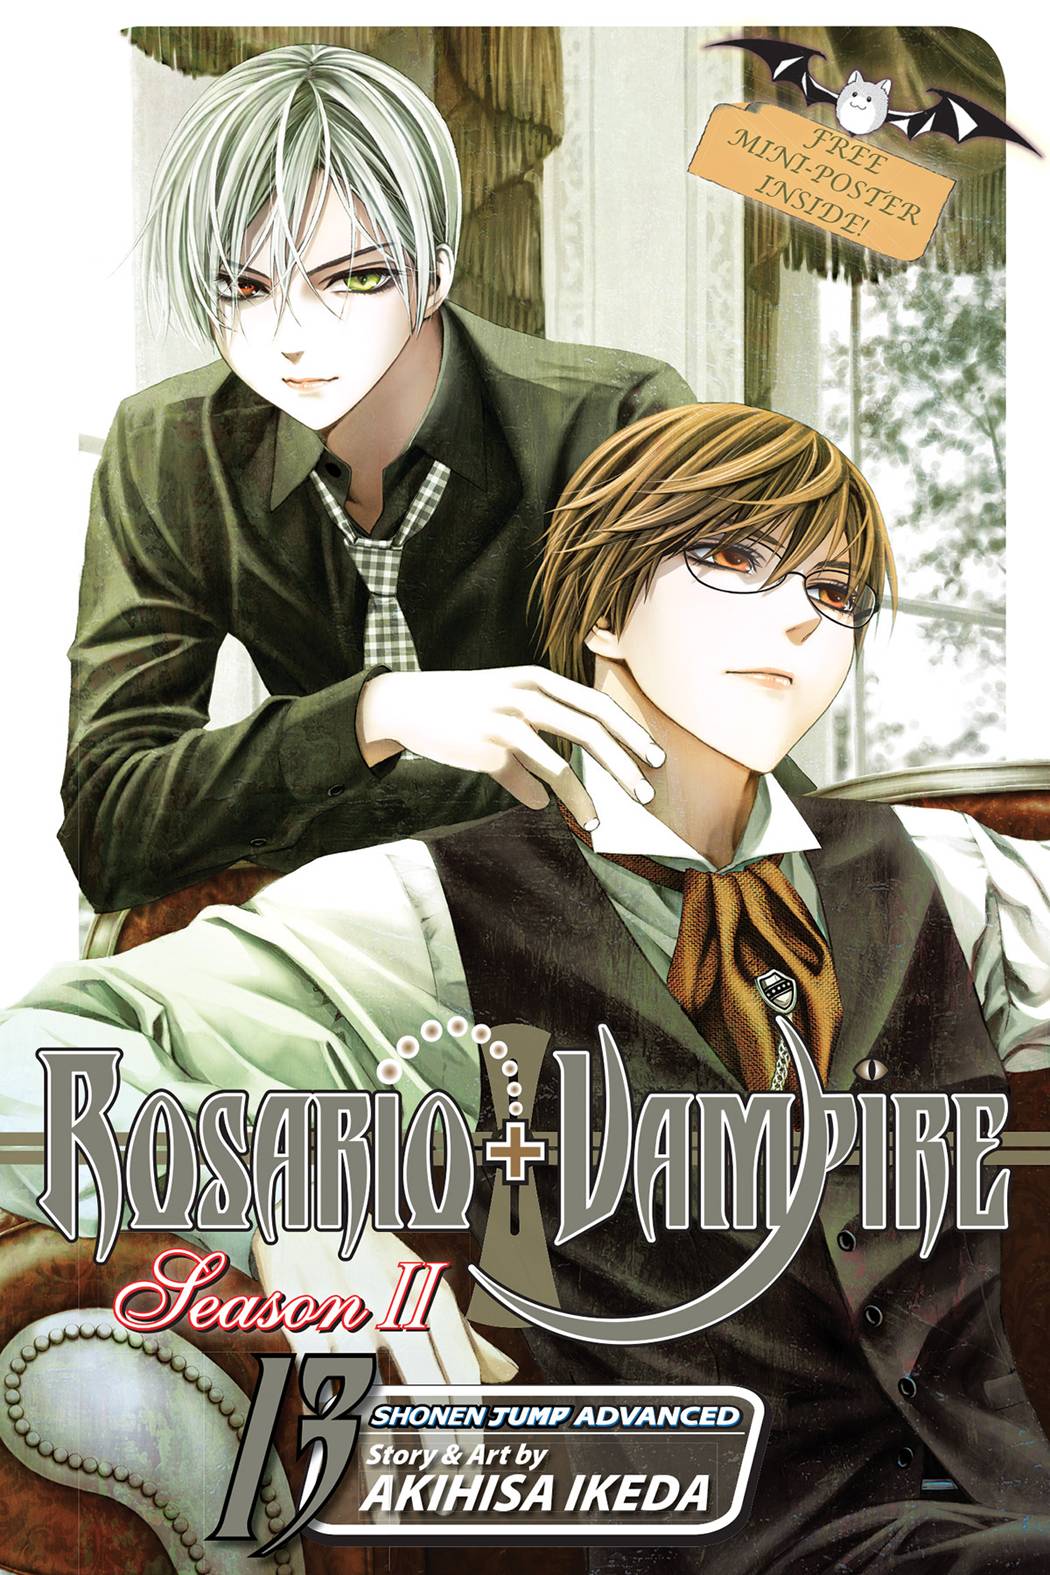 Rosario Vampire Season II Manga Volume 13